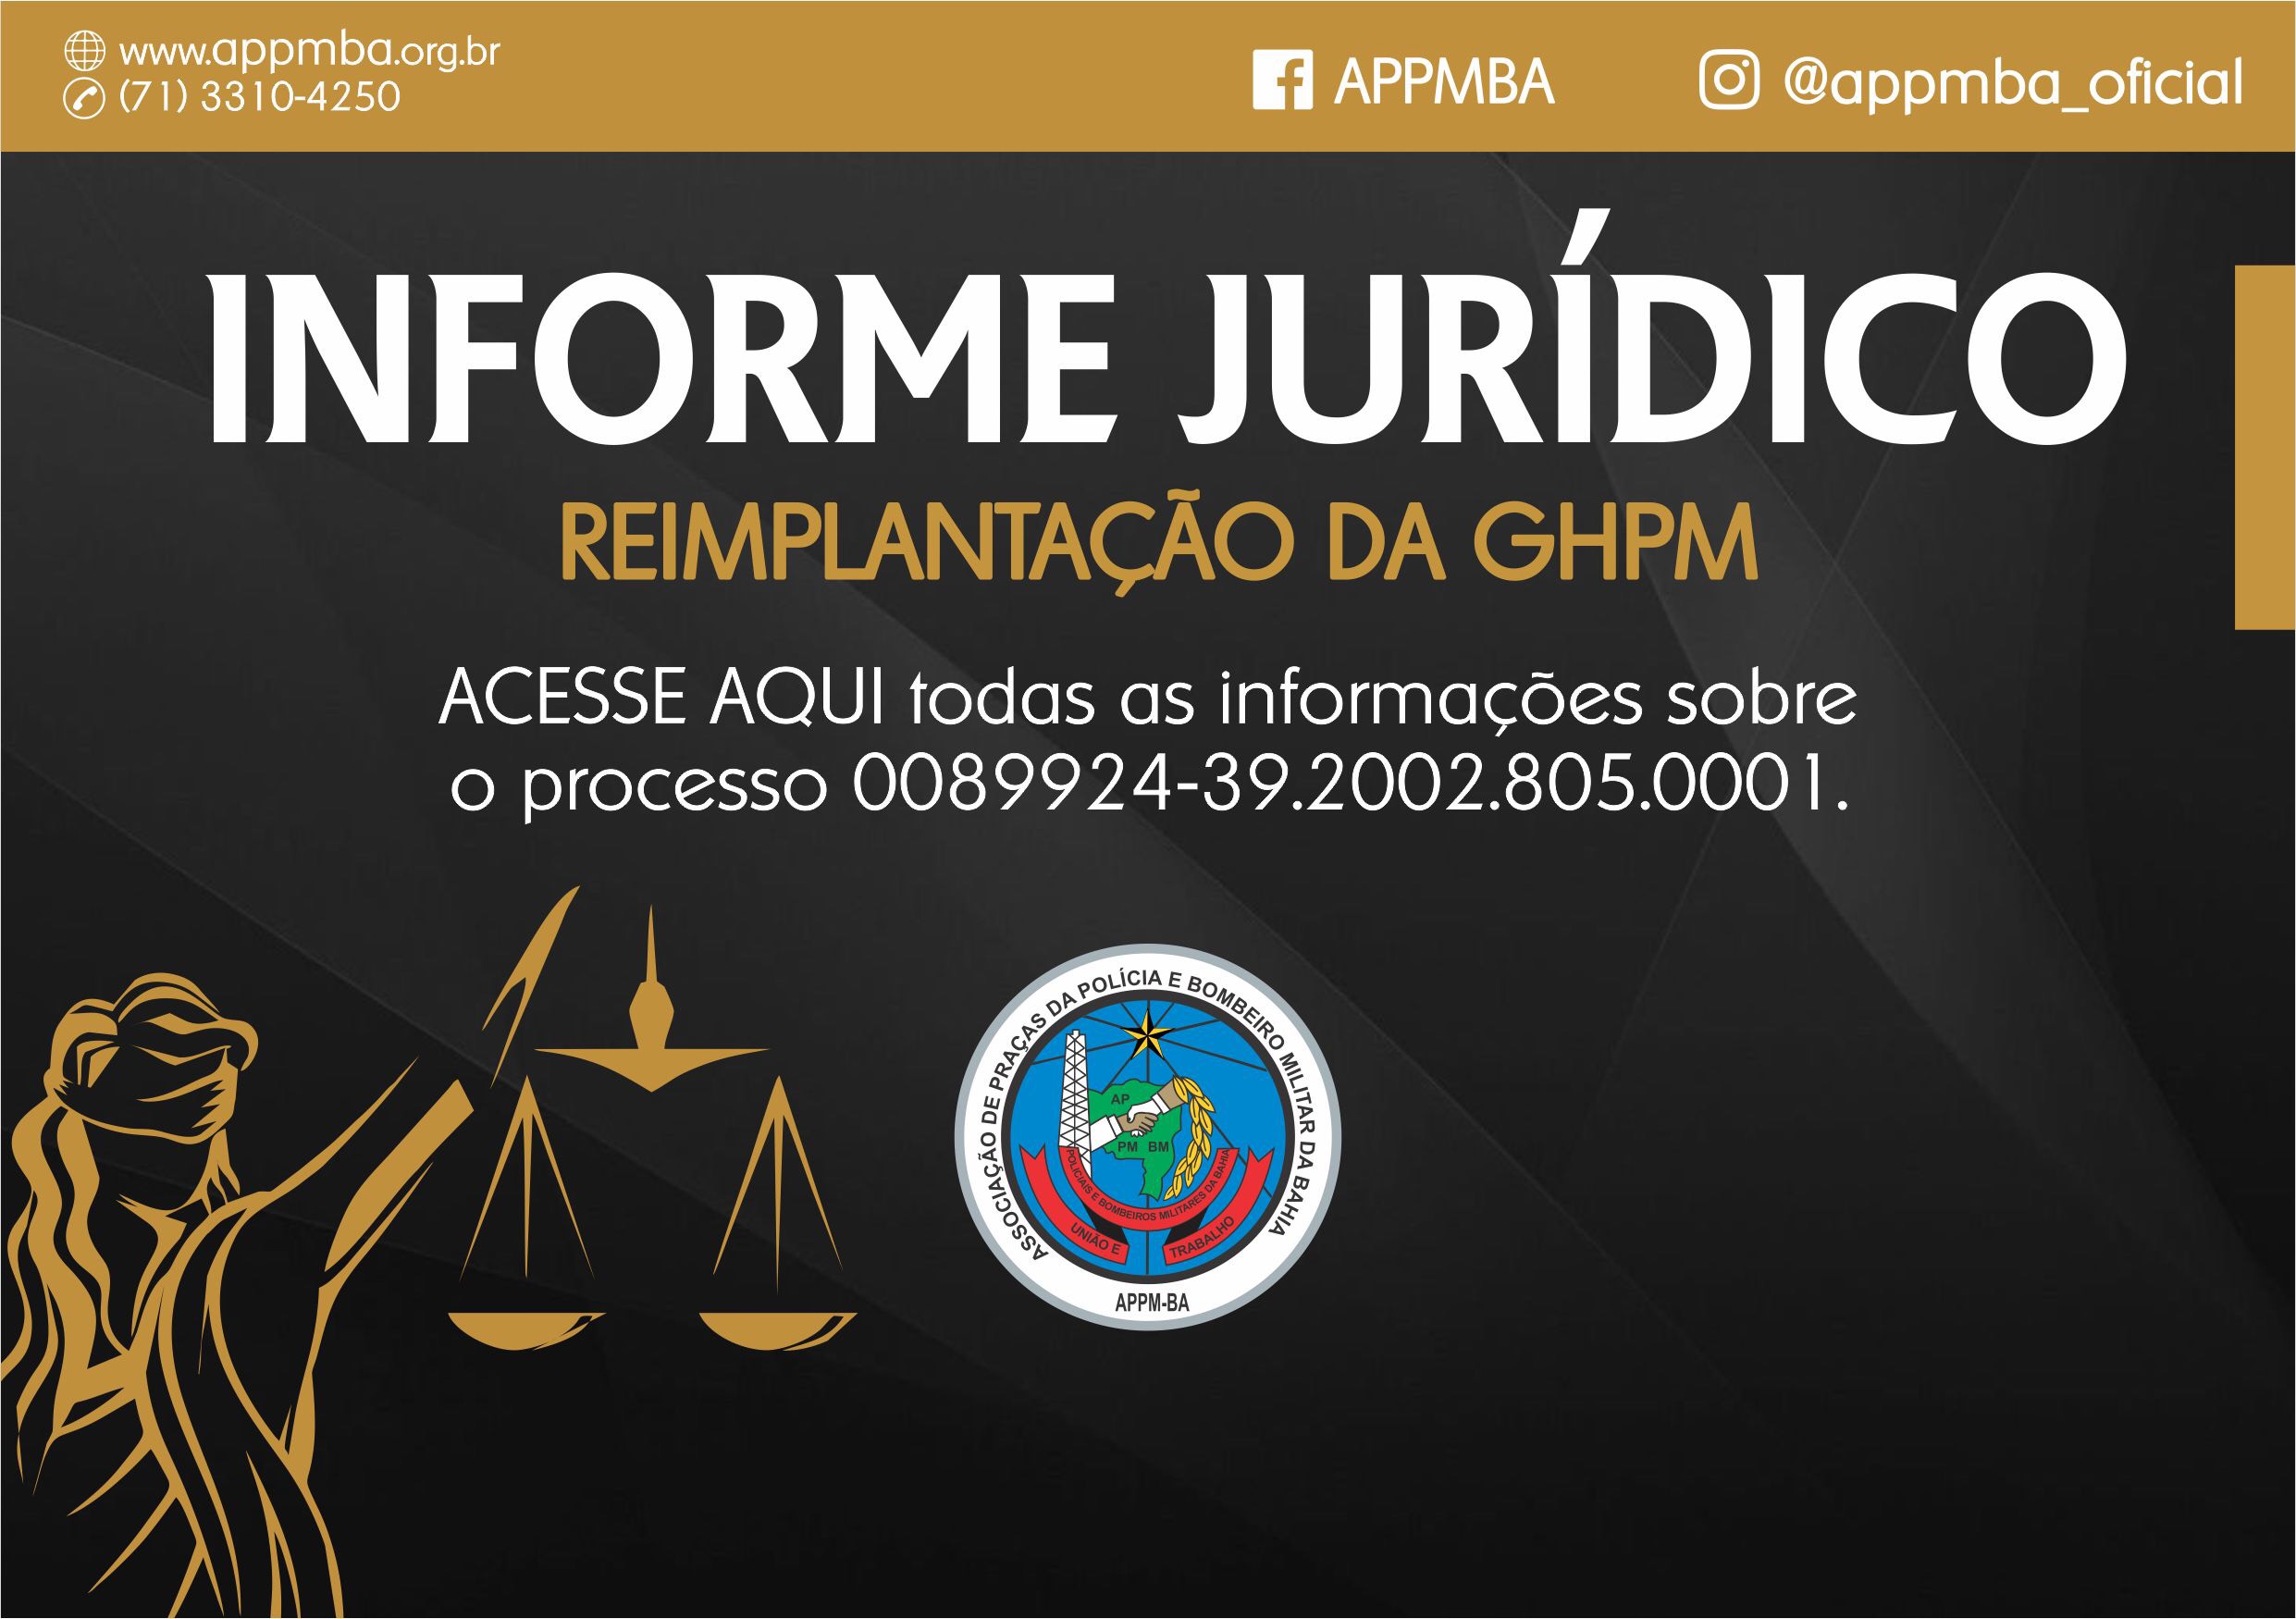 Informe Jurídico - Reimplantação da GHPM 0089924-39.2002.805.0001